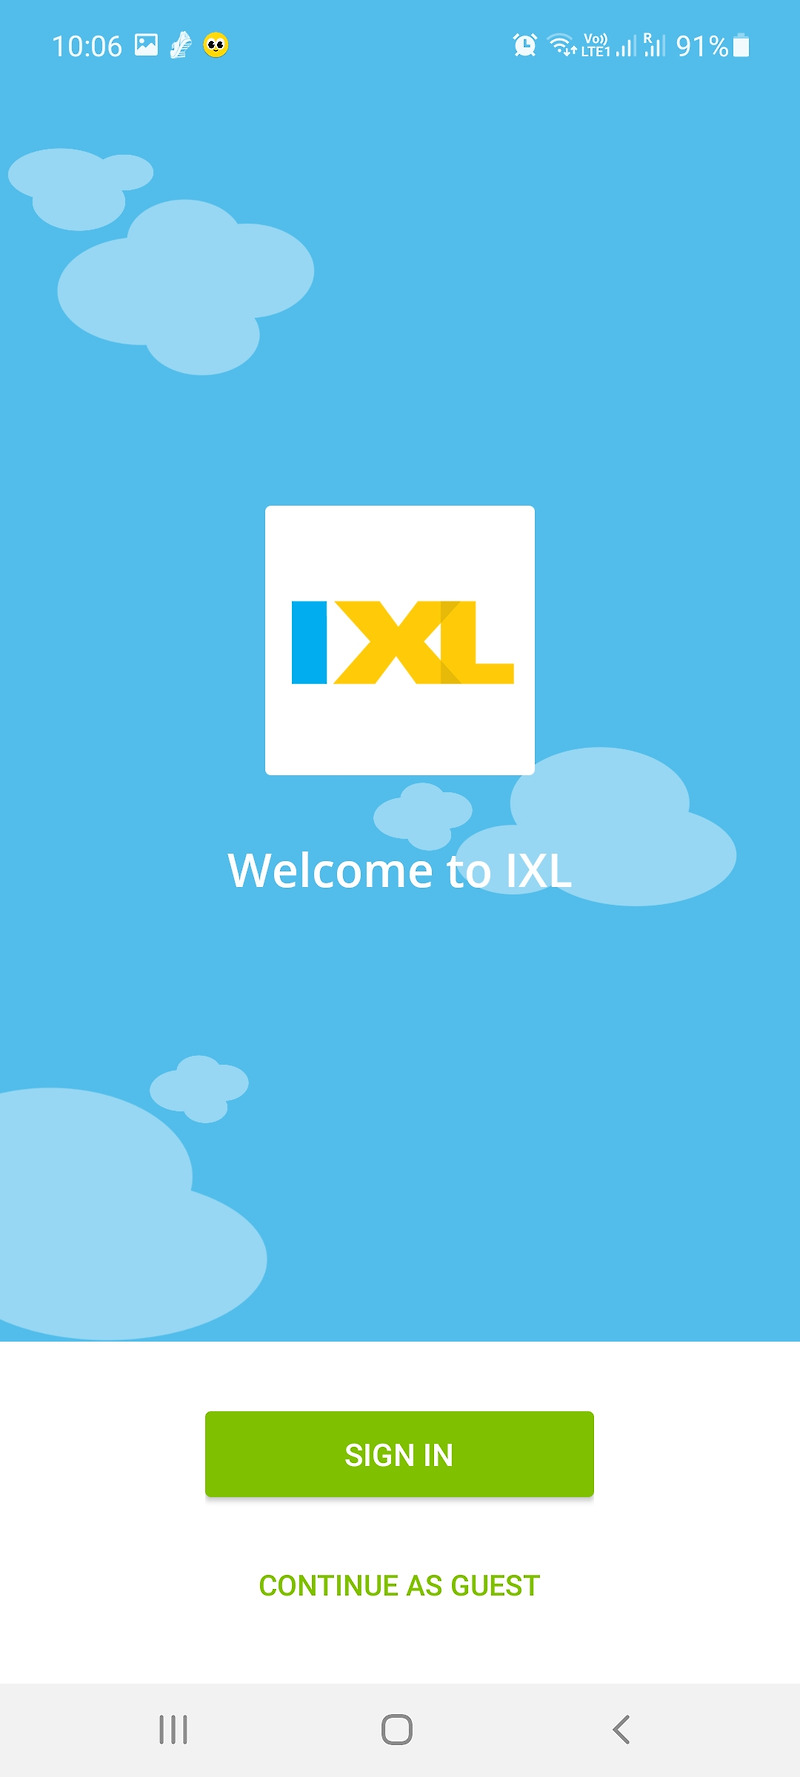 IXL-온라인 학습 플랫폼(영어앱)